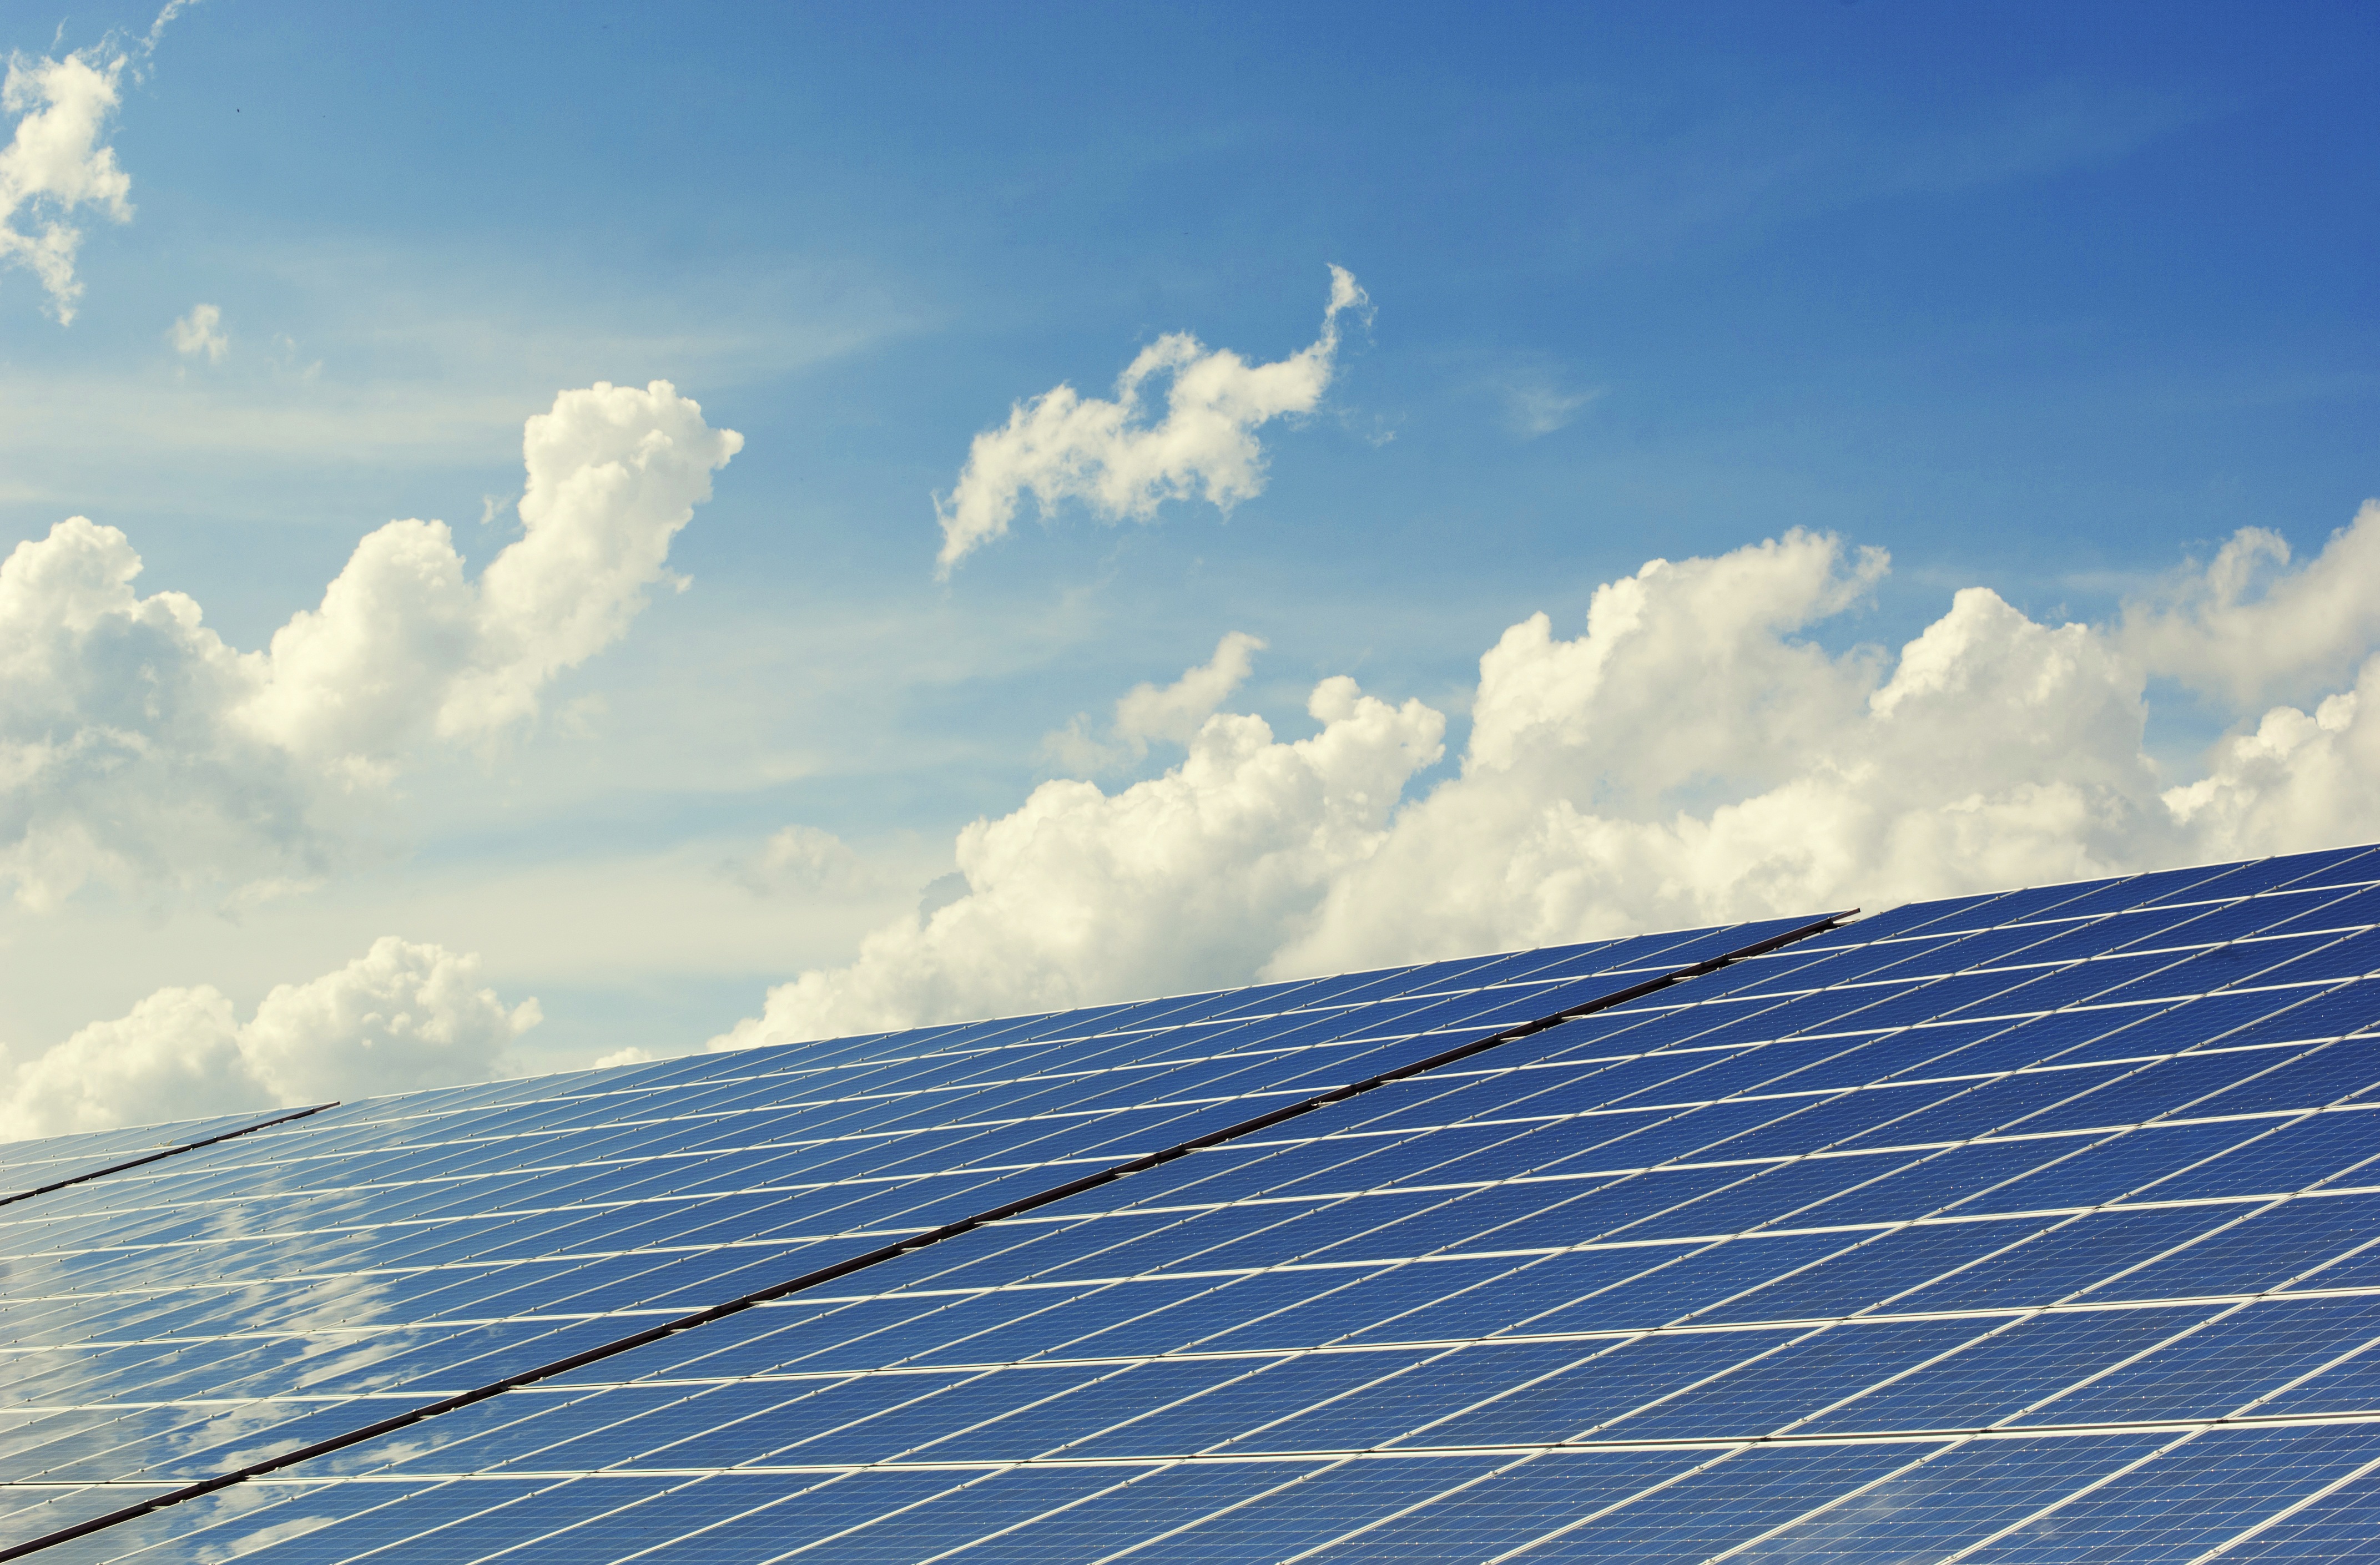 Sunseapは、インドネシア貯水池に2.2GWpの水上太陽光発電プロジェクトを建設